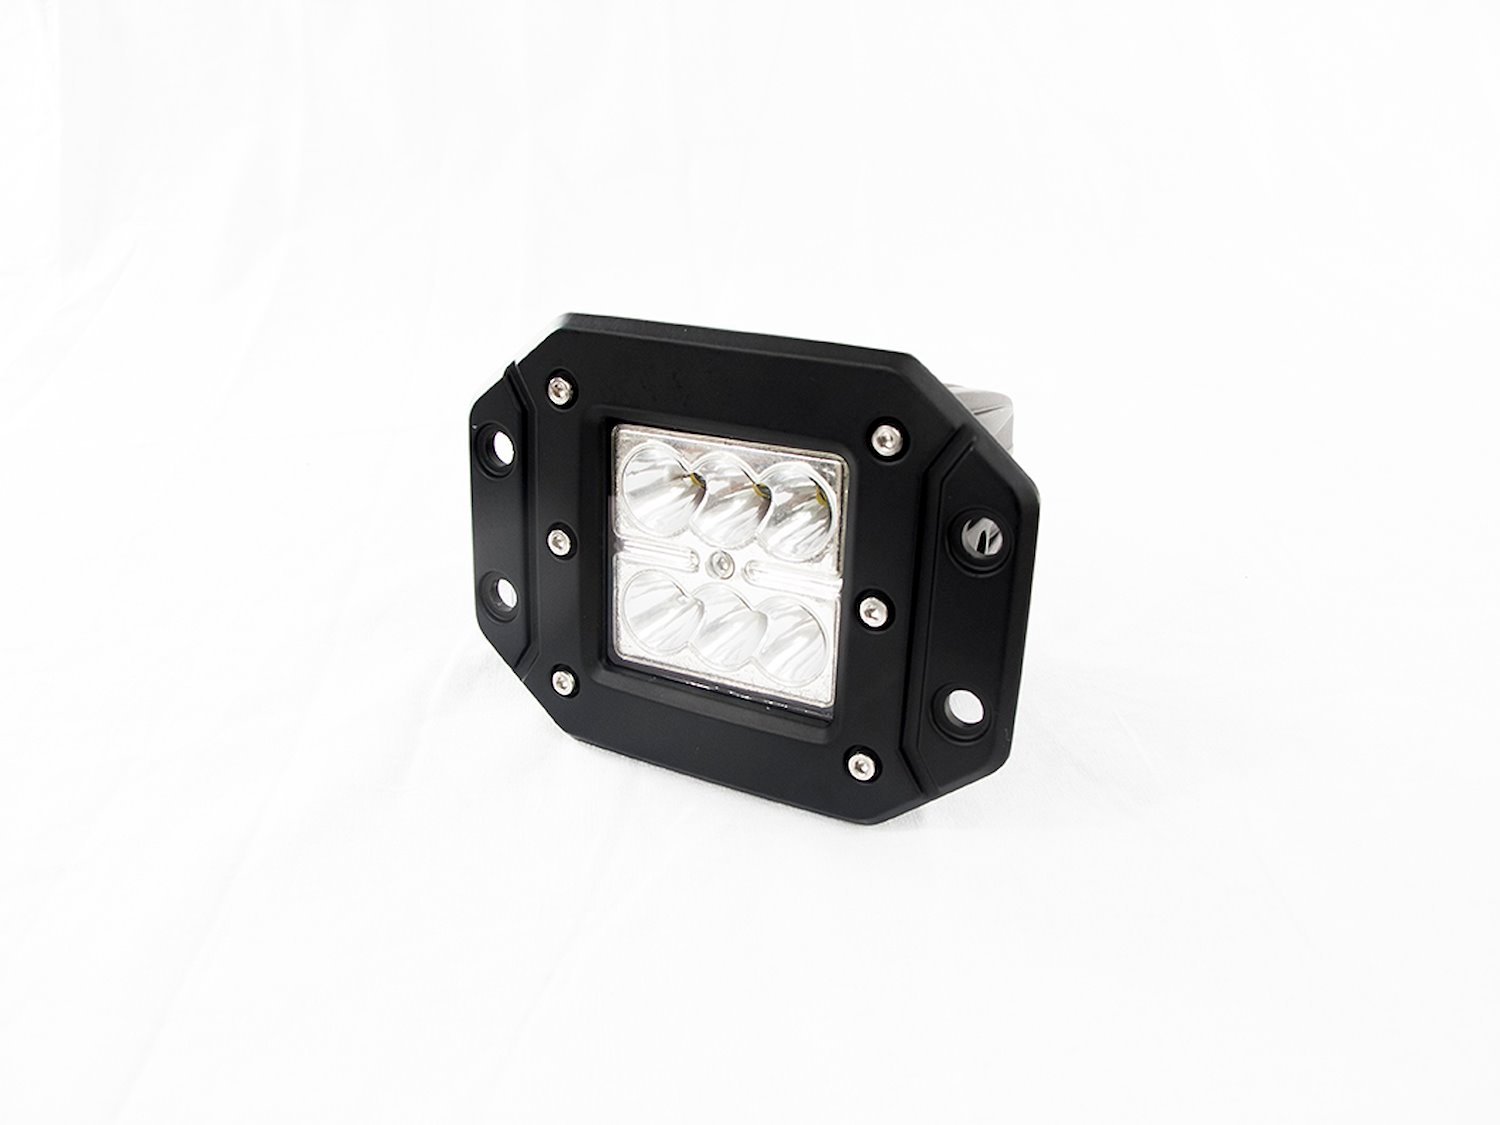 RS-18W6LED-FM BLACK SHELL Flush Mountable 18W 6-LED High-Powered 3x3 LED Spot Light, w/ White L.E.D.